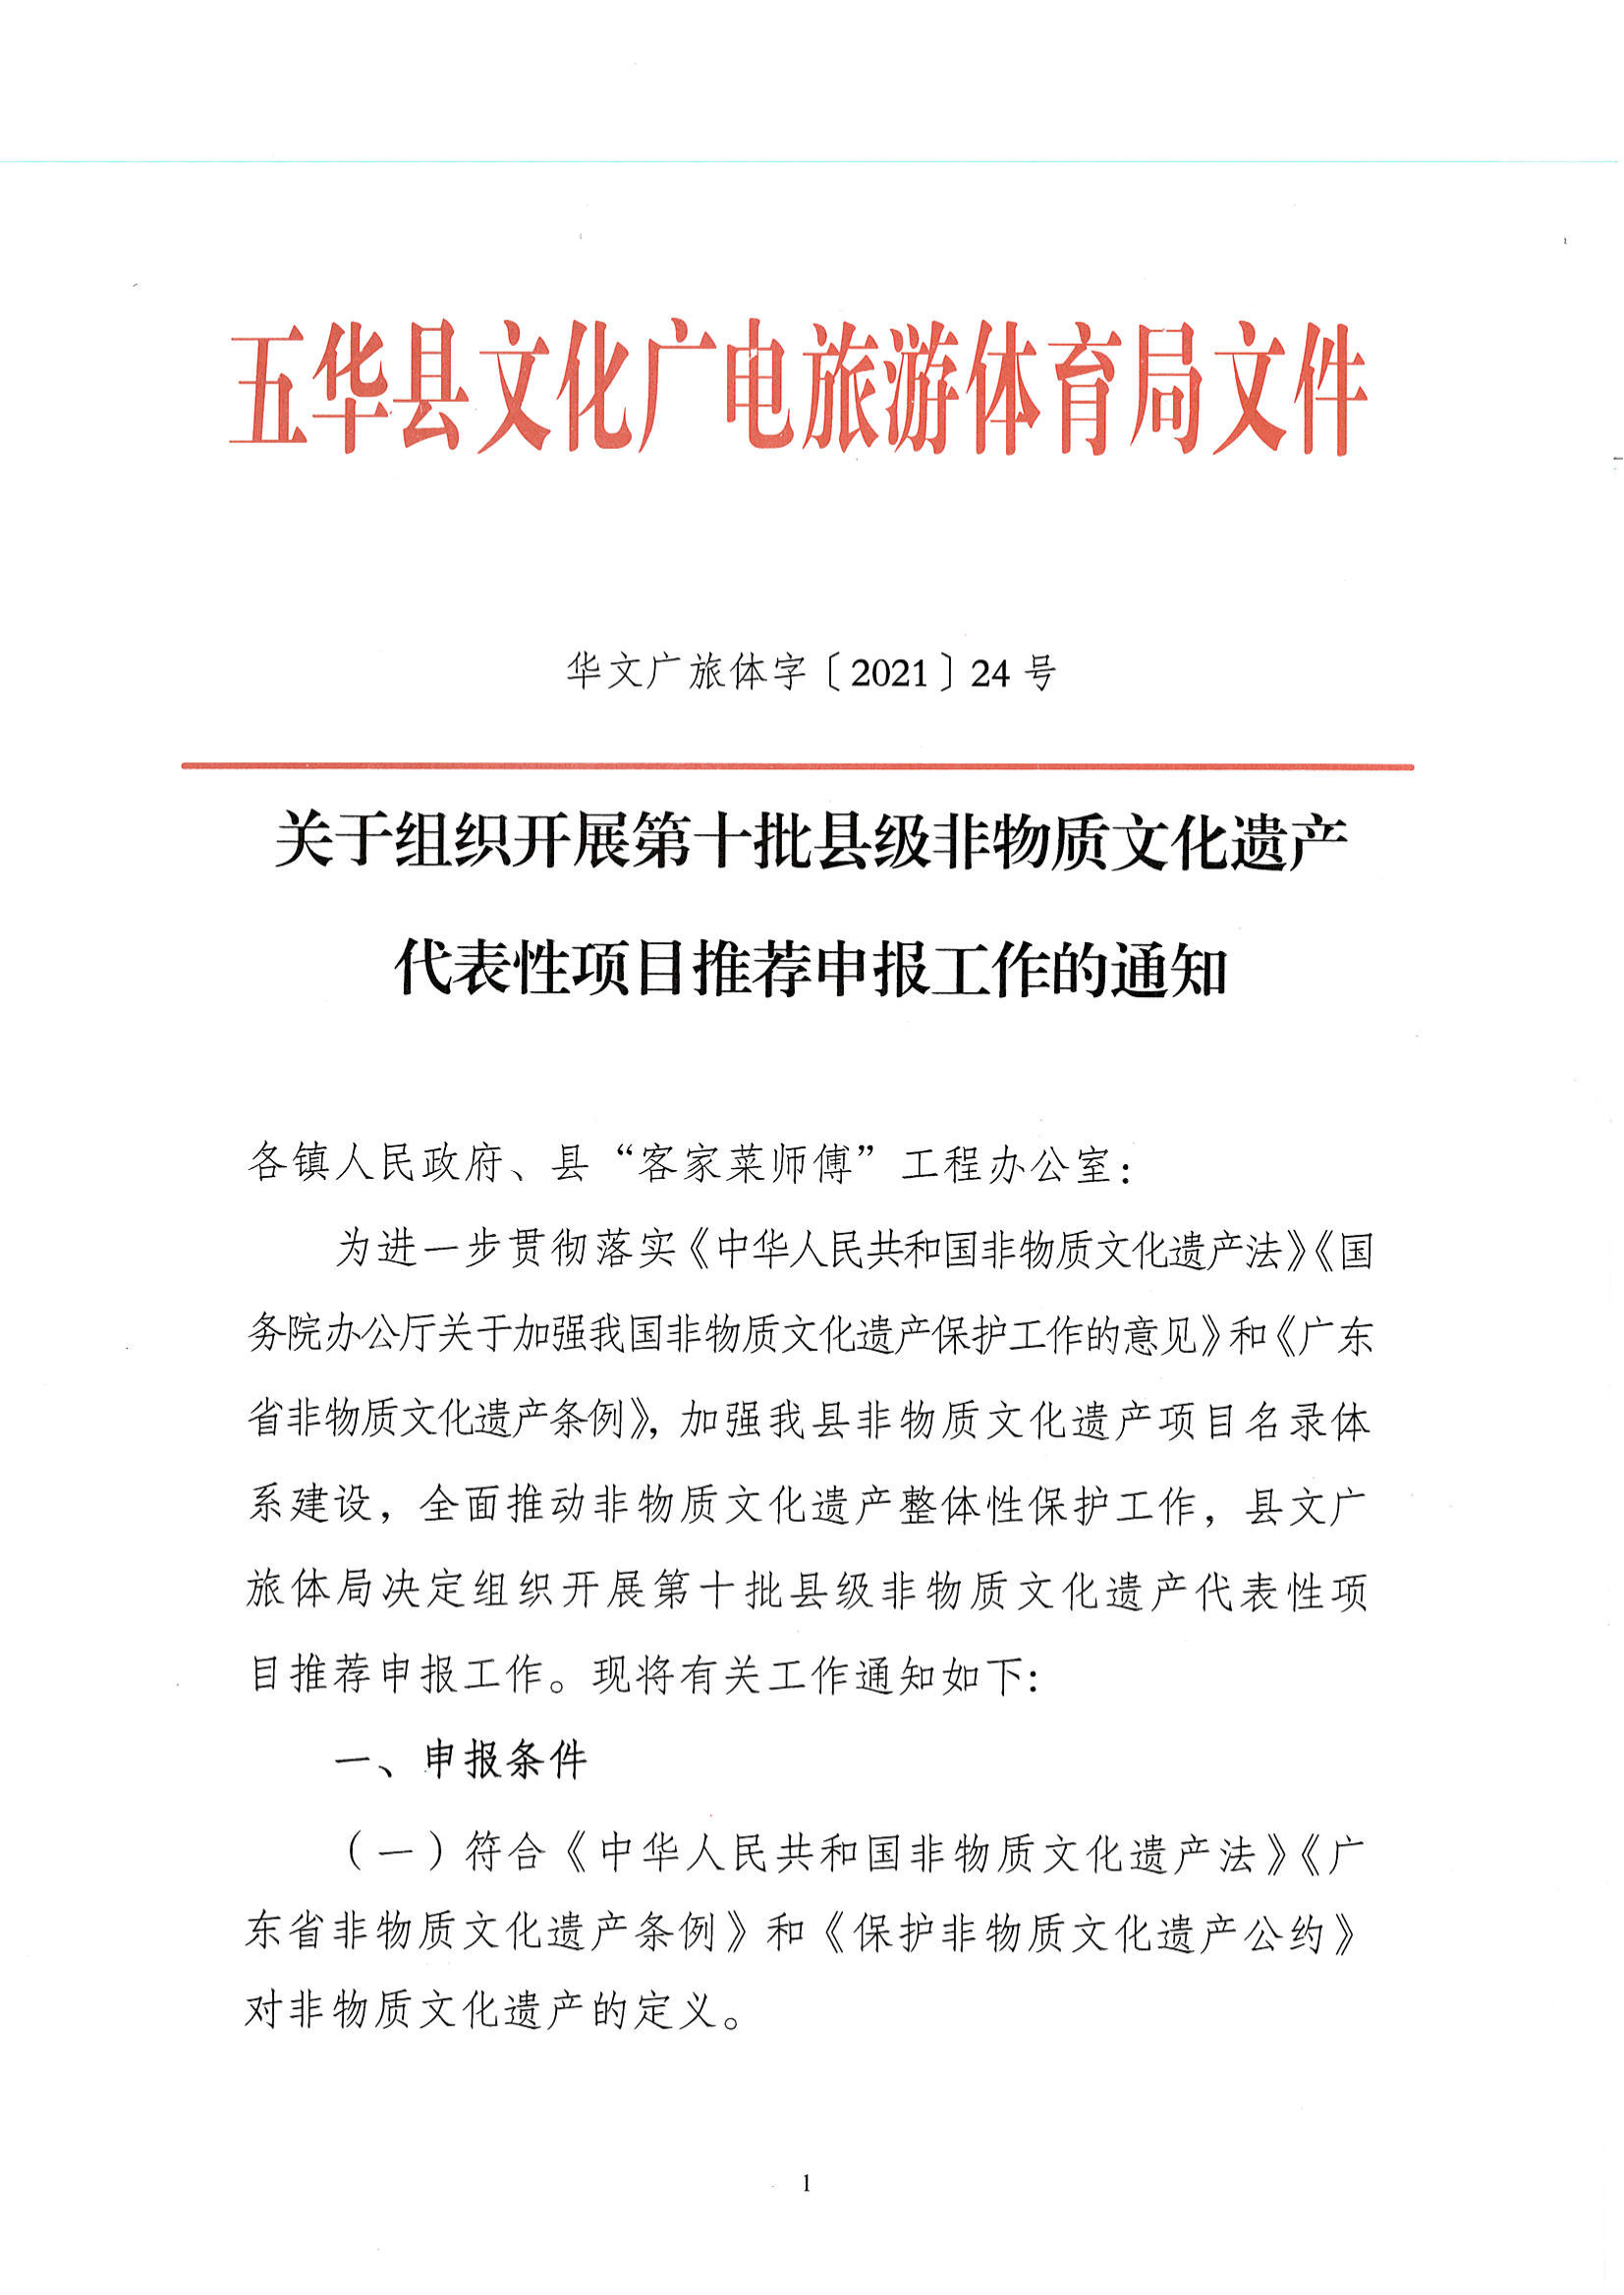 华文广旅体字〔2021〕24号  代表性项目推荐申报工作的通知_00.png